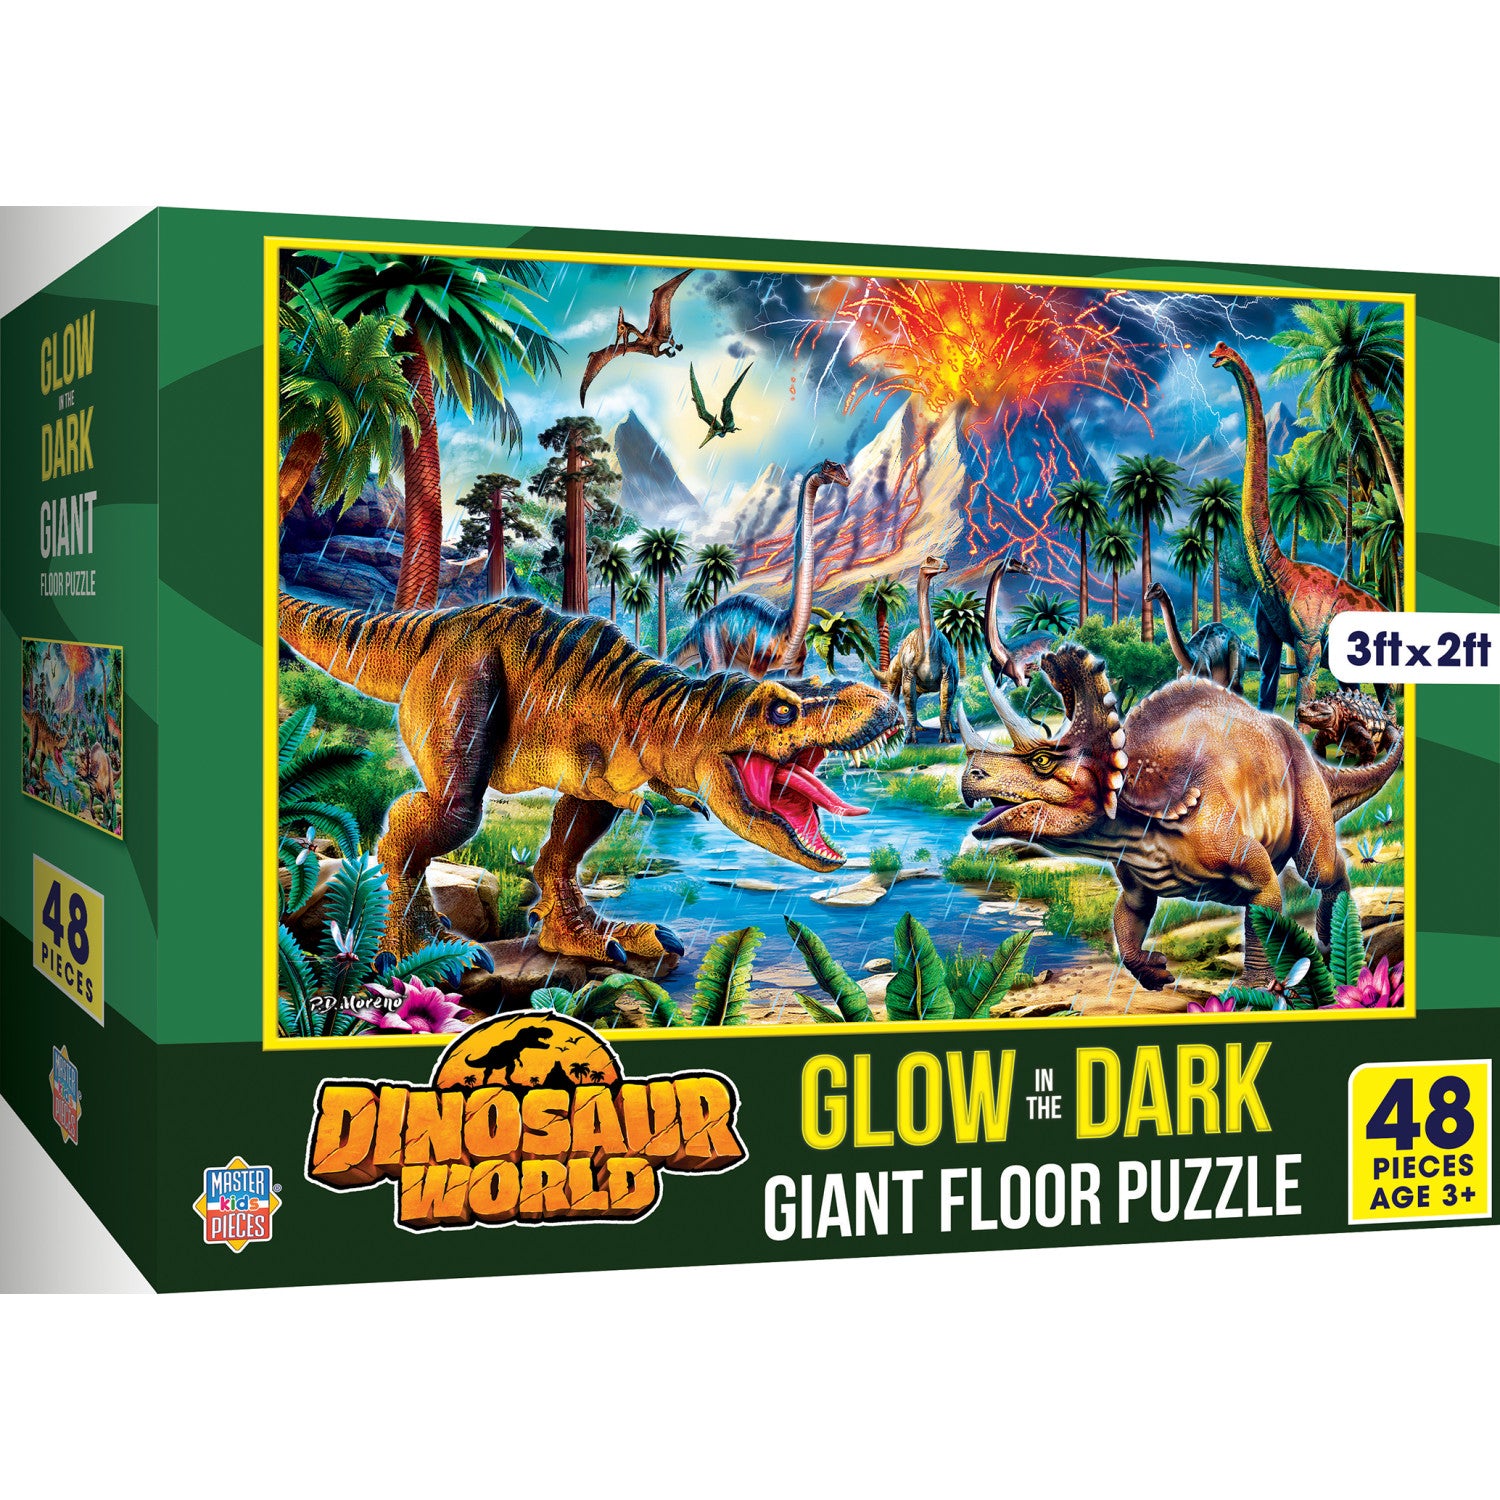 Glow in the Dark - Dinosaur World 48 Piece Floor Jigsaw Puzzle